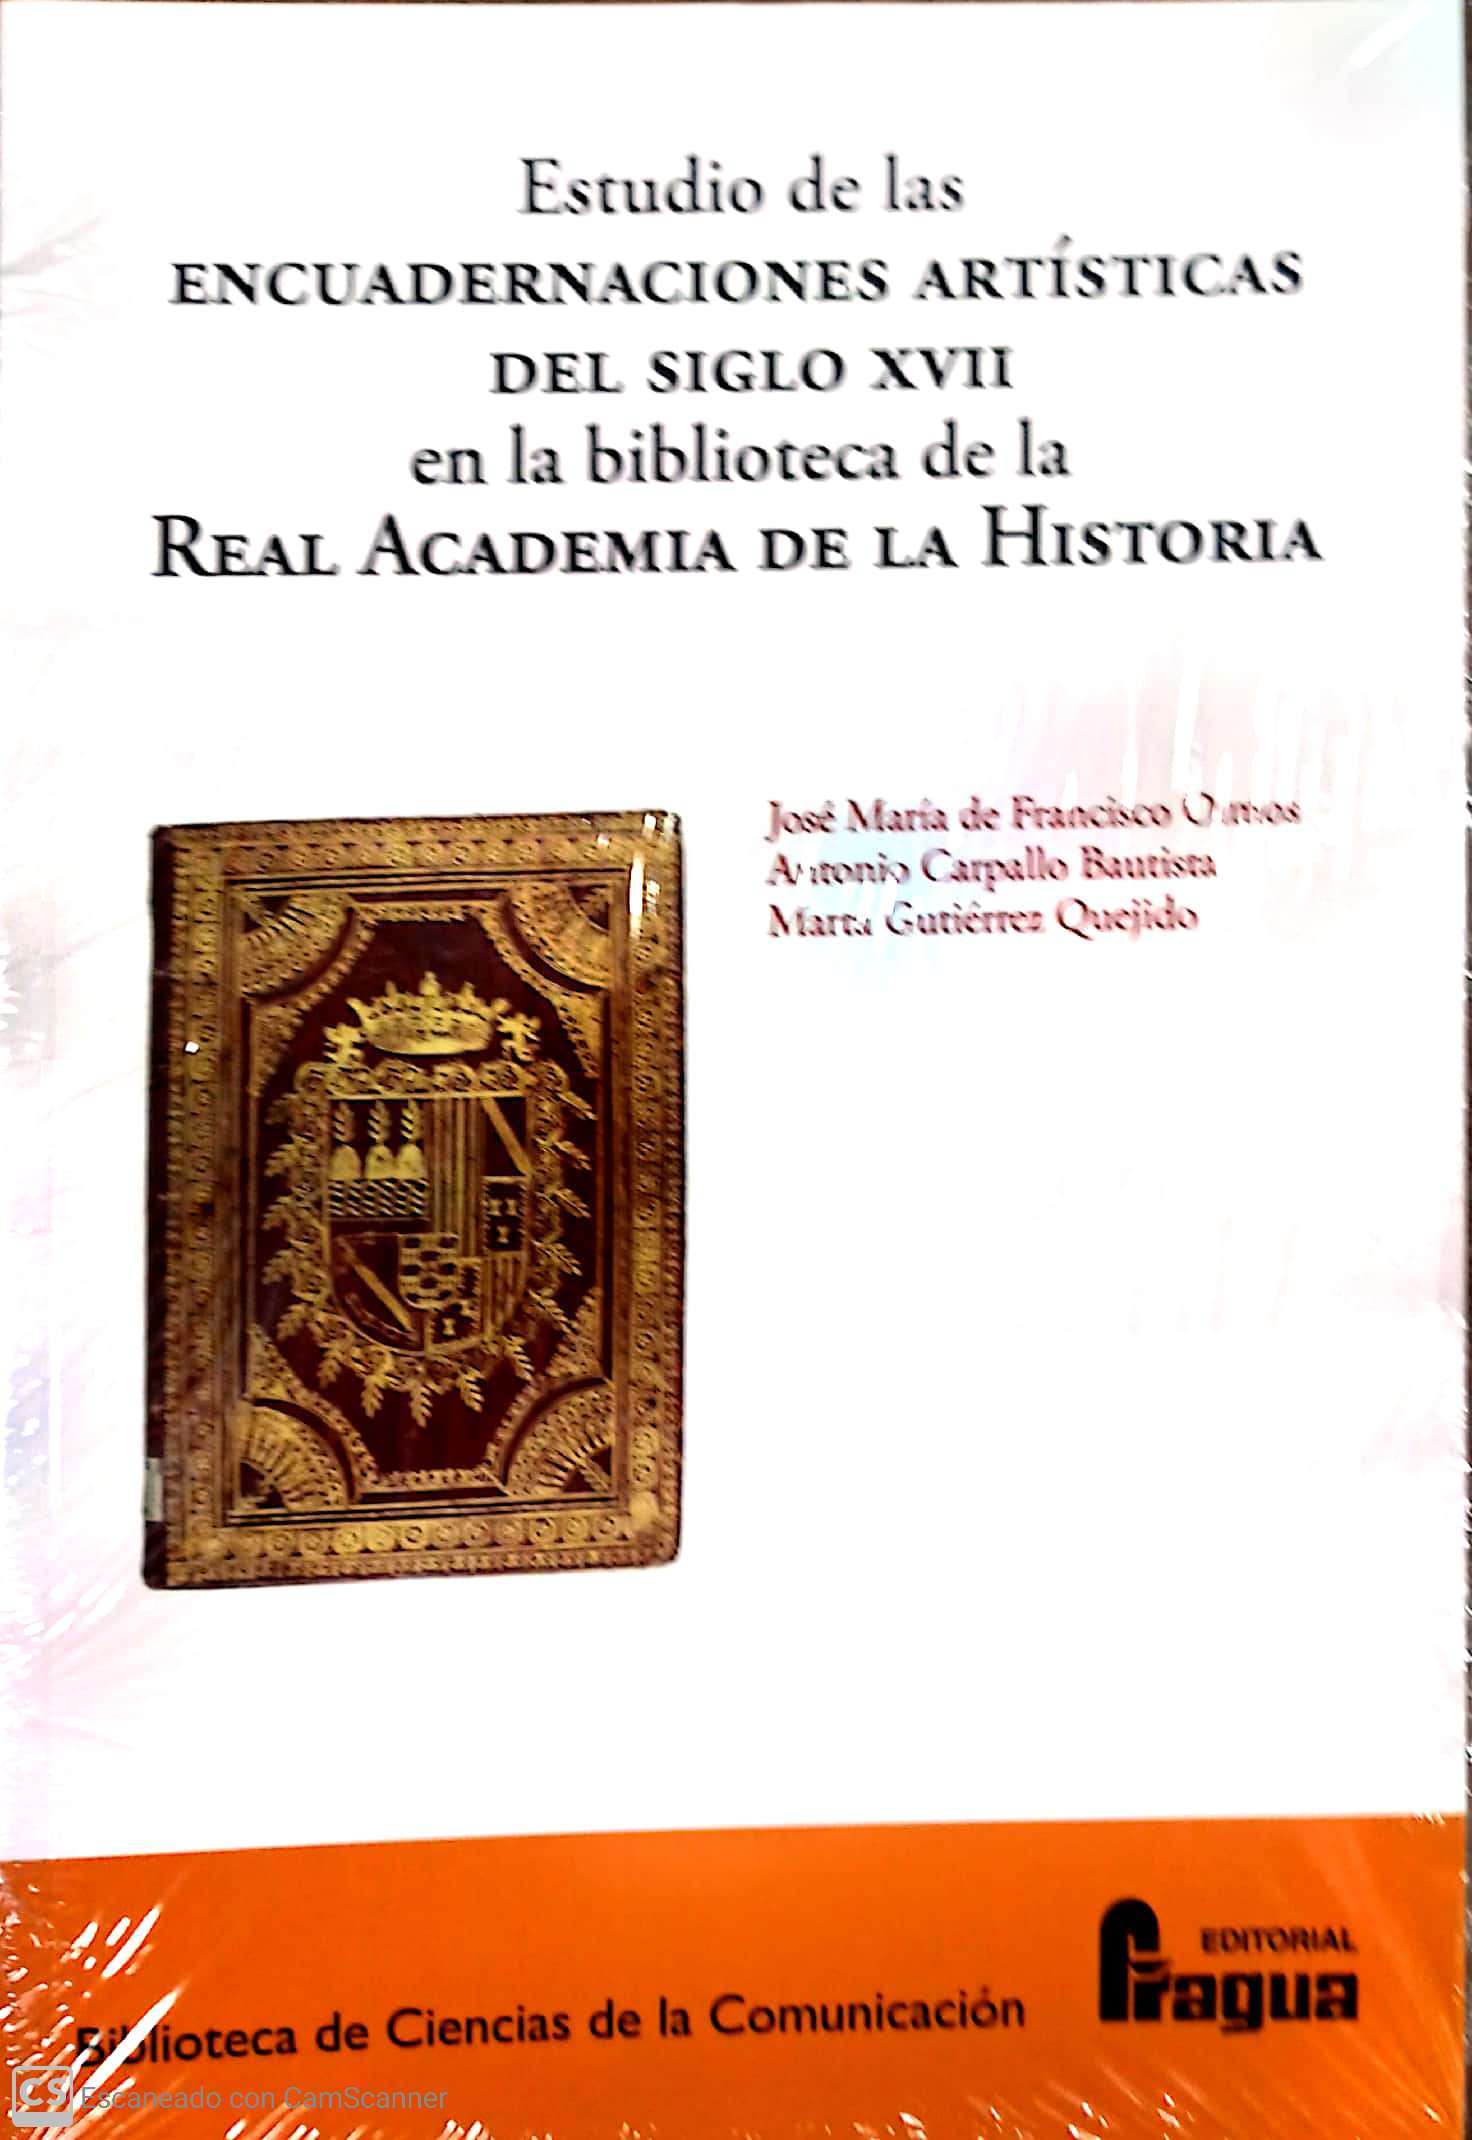 ESTUDIO DE LAS ENCUADERNACIONES ARTÍSTICAS DEL SIGLO XVII EM LA BIBLIOTECA DE LA REAL ACADEMIA DE LA HISTORIA.